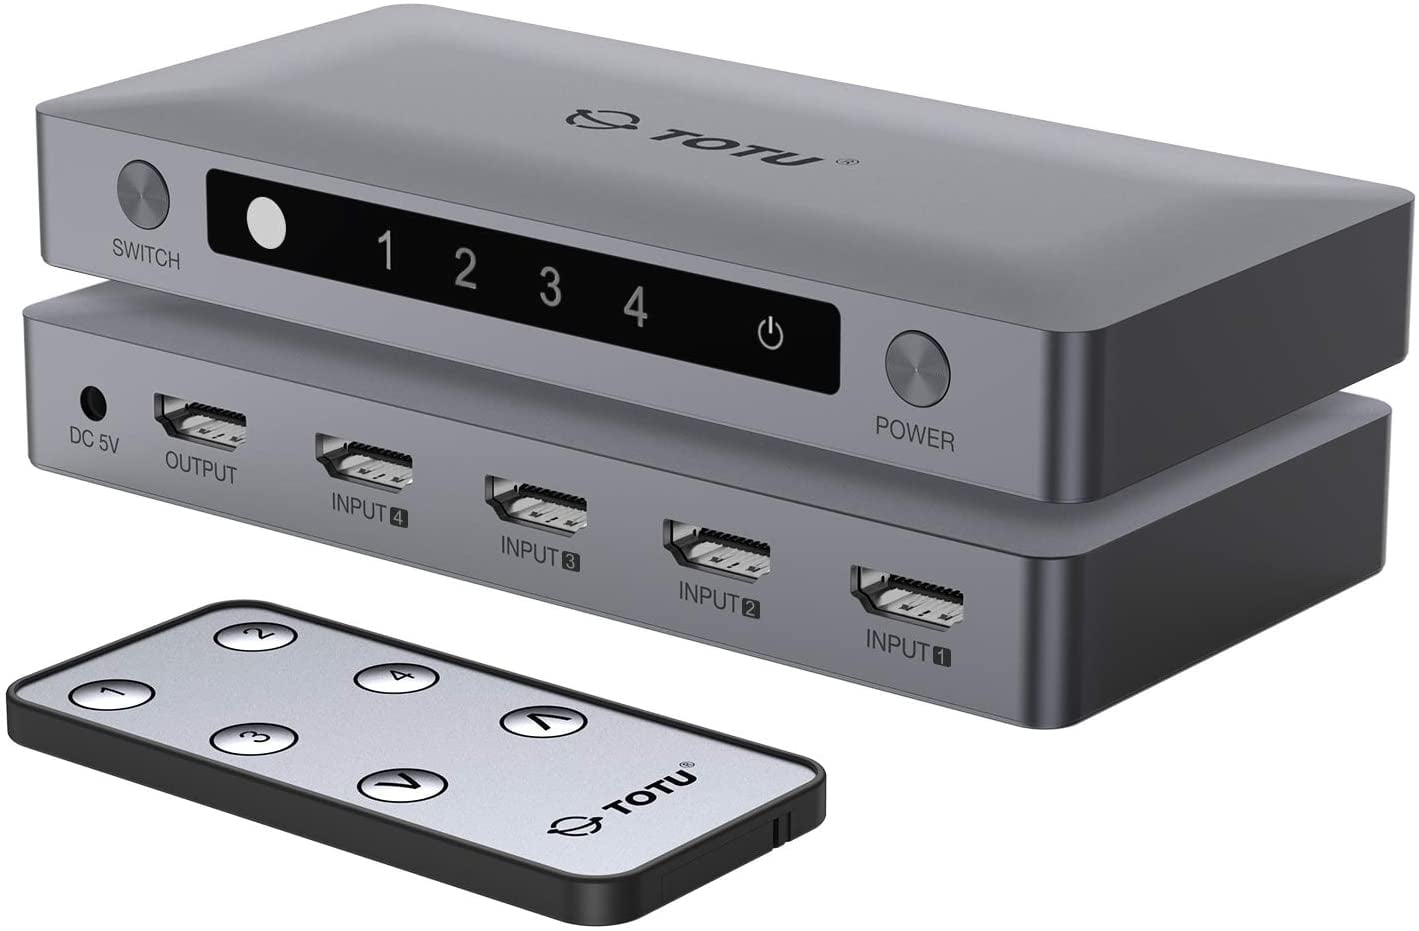 PLNEIK 4 in 1 HDMI Switch, 4 Ports 4K 60Hz HDMI 2.0 Switcher Splitters with Remote - Walmart.com